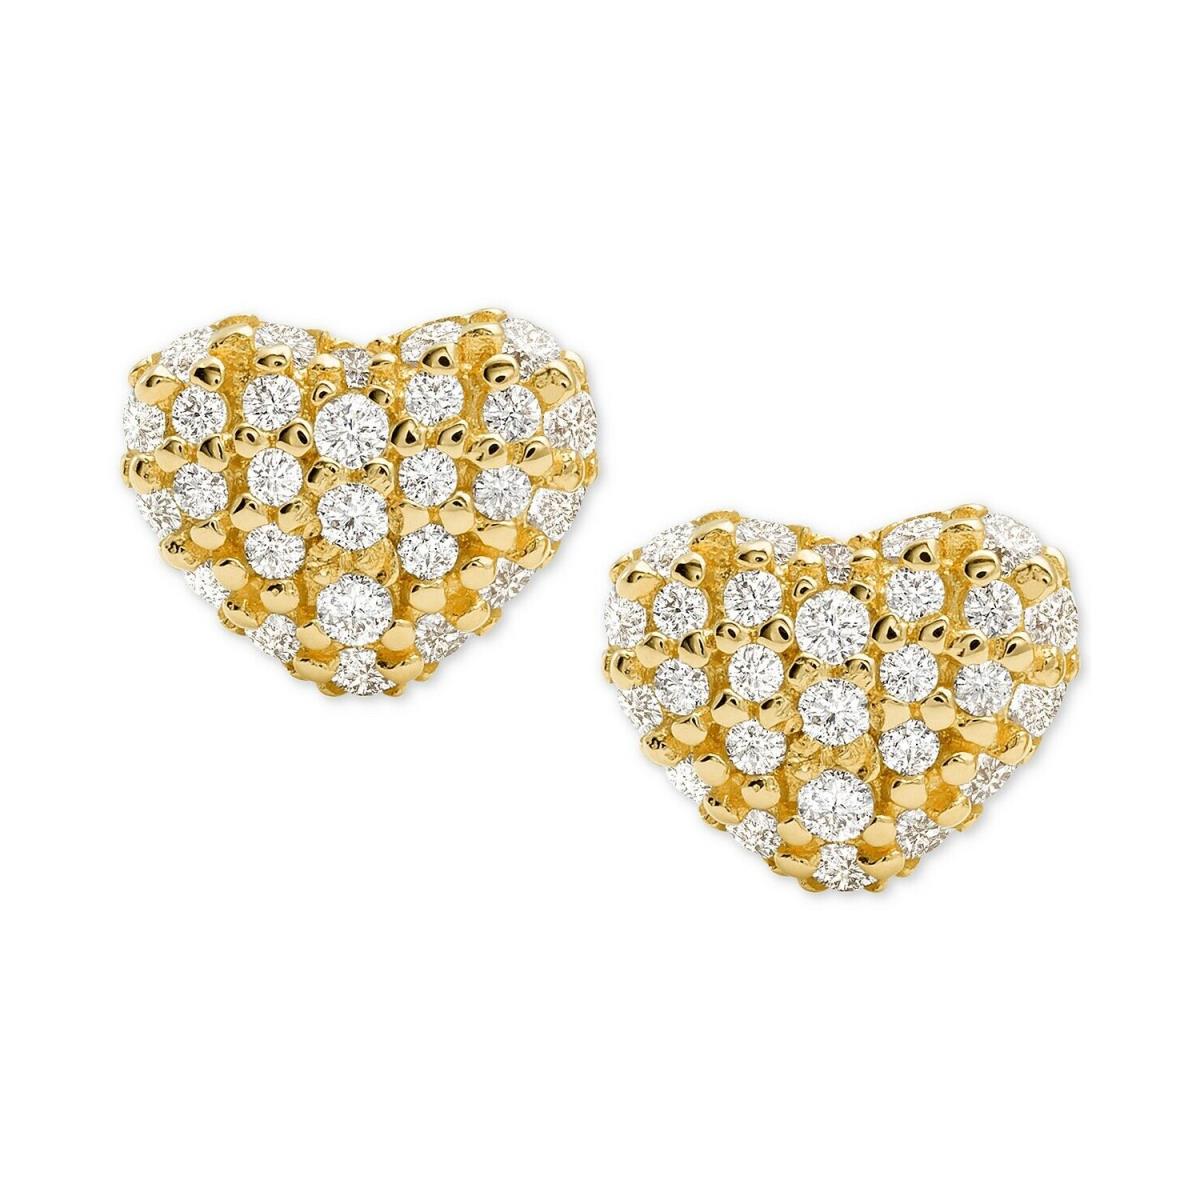 Michael Kors Women`s Kors Love Pav Heart Sterling Silver Stud Earrings